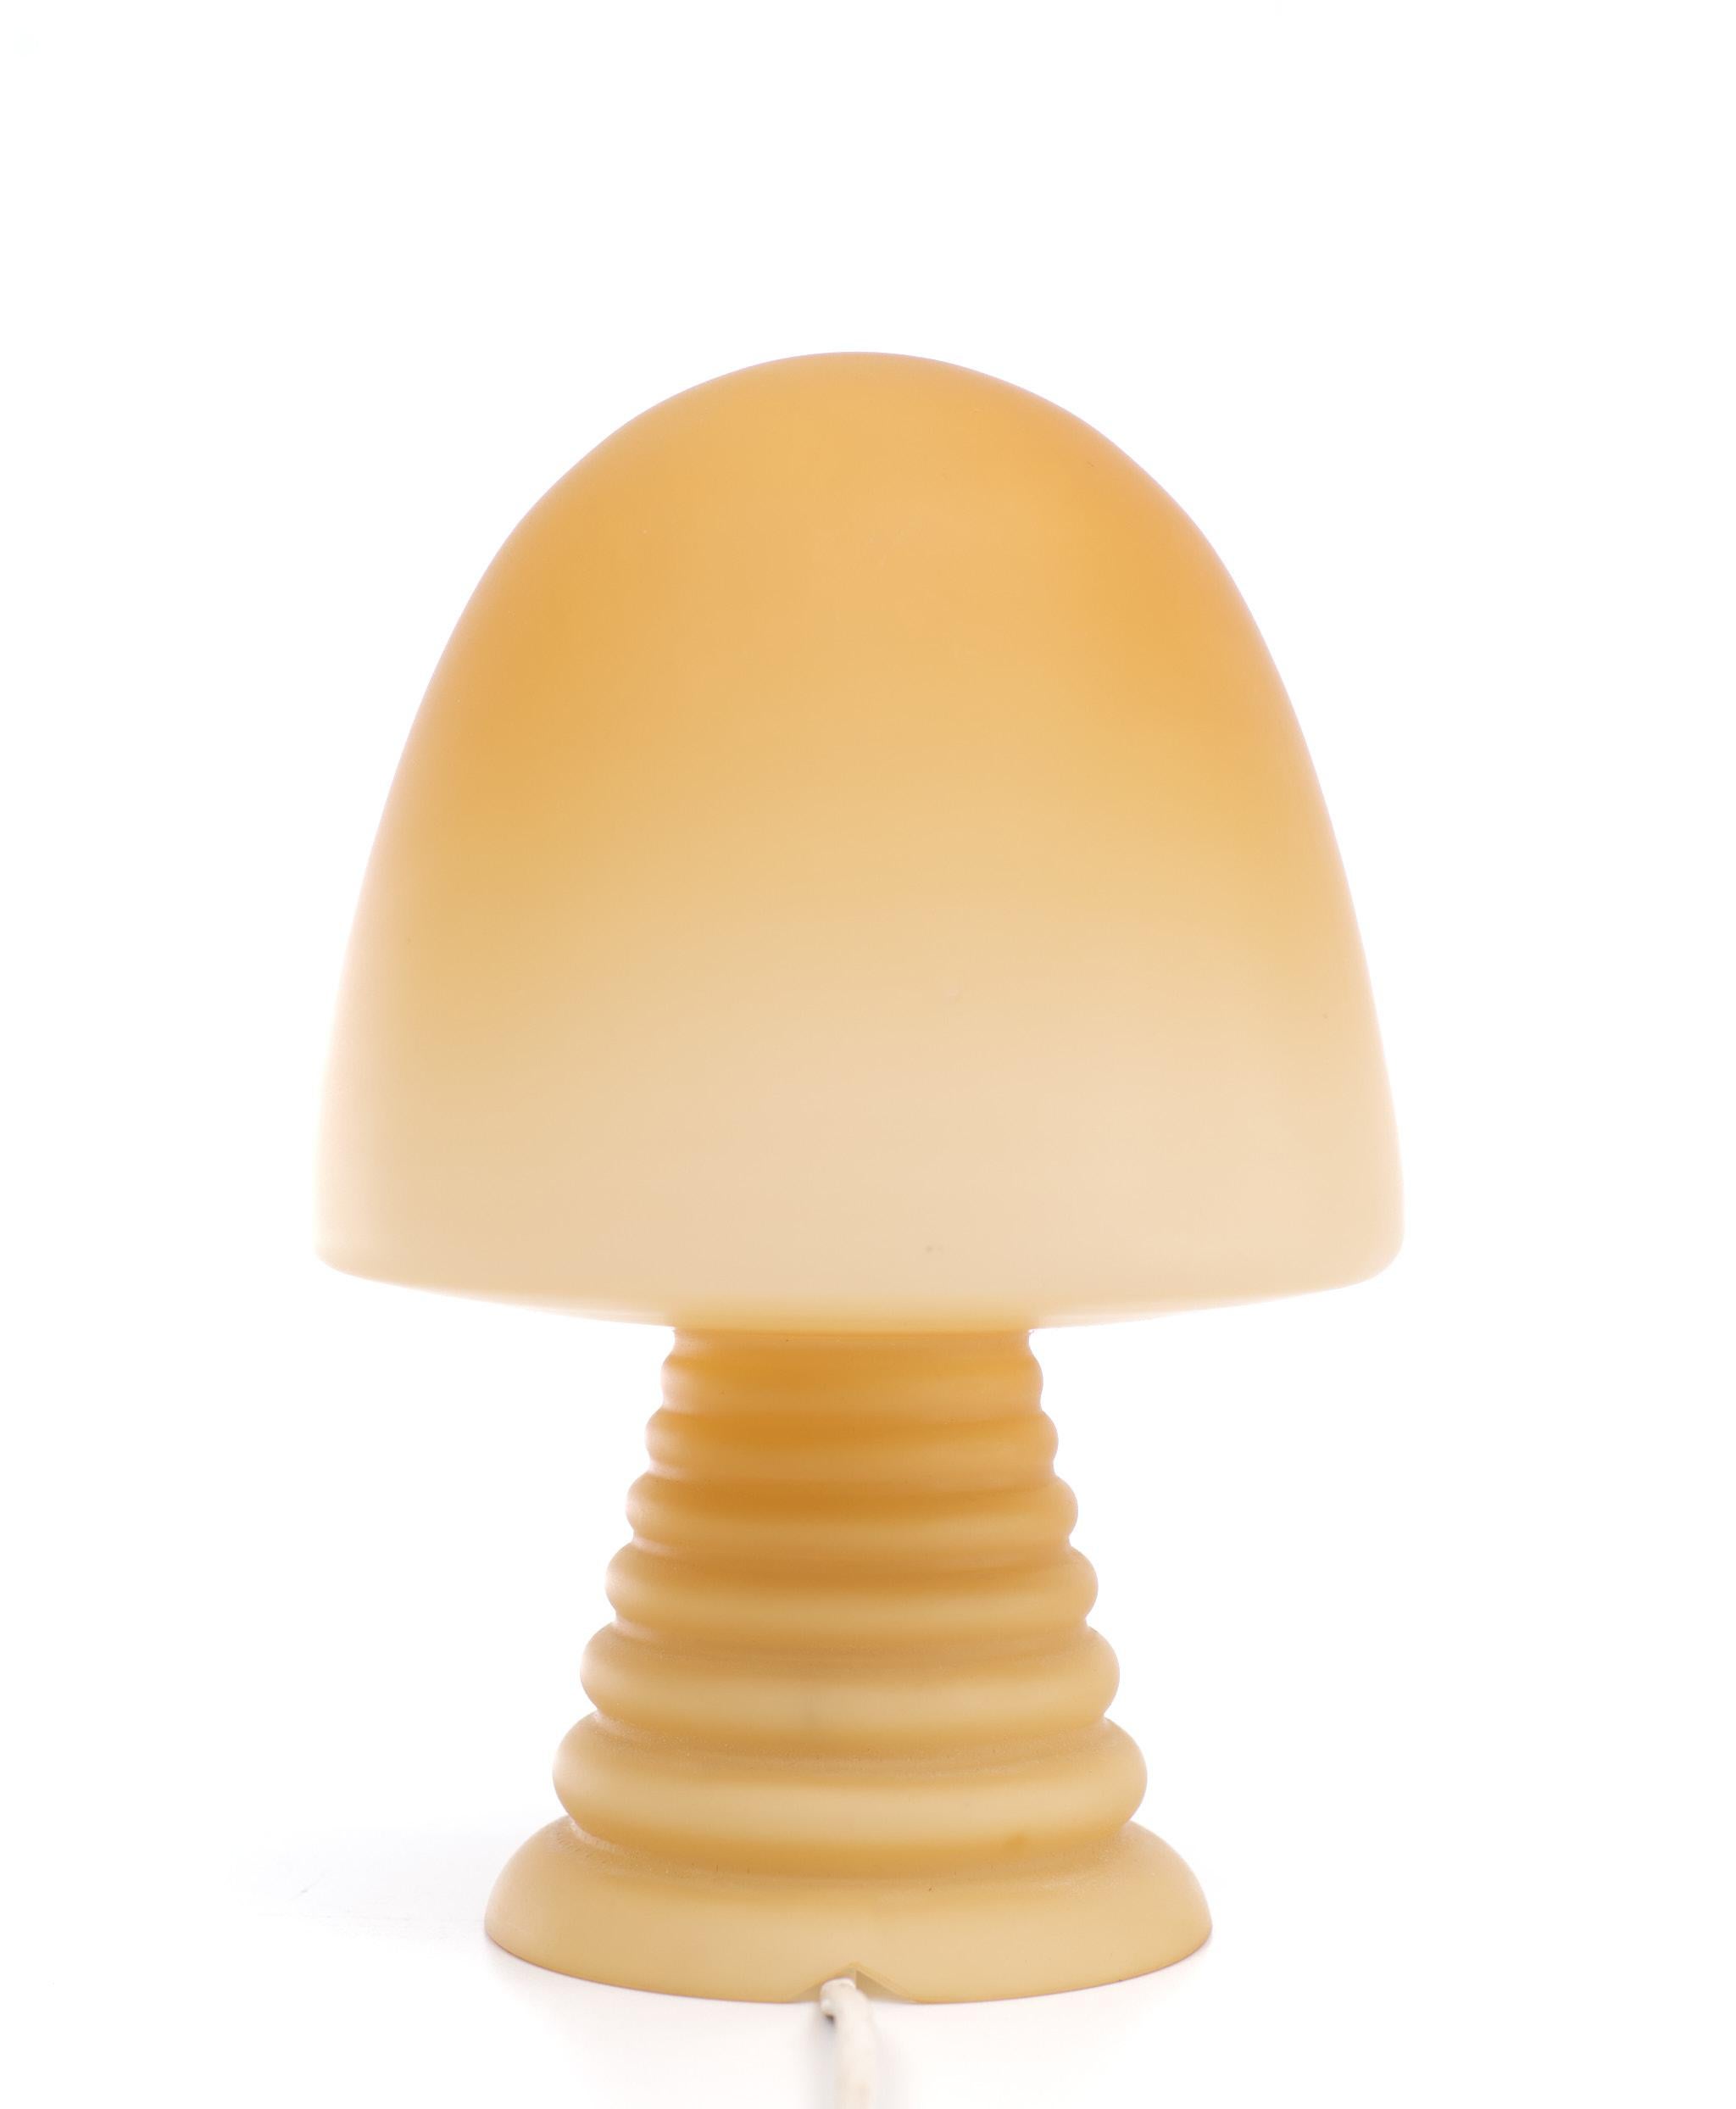 Space Age Peil & Putzler Mushroom Table Lamp 1970s For Sale